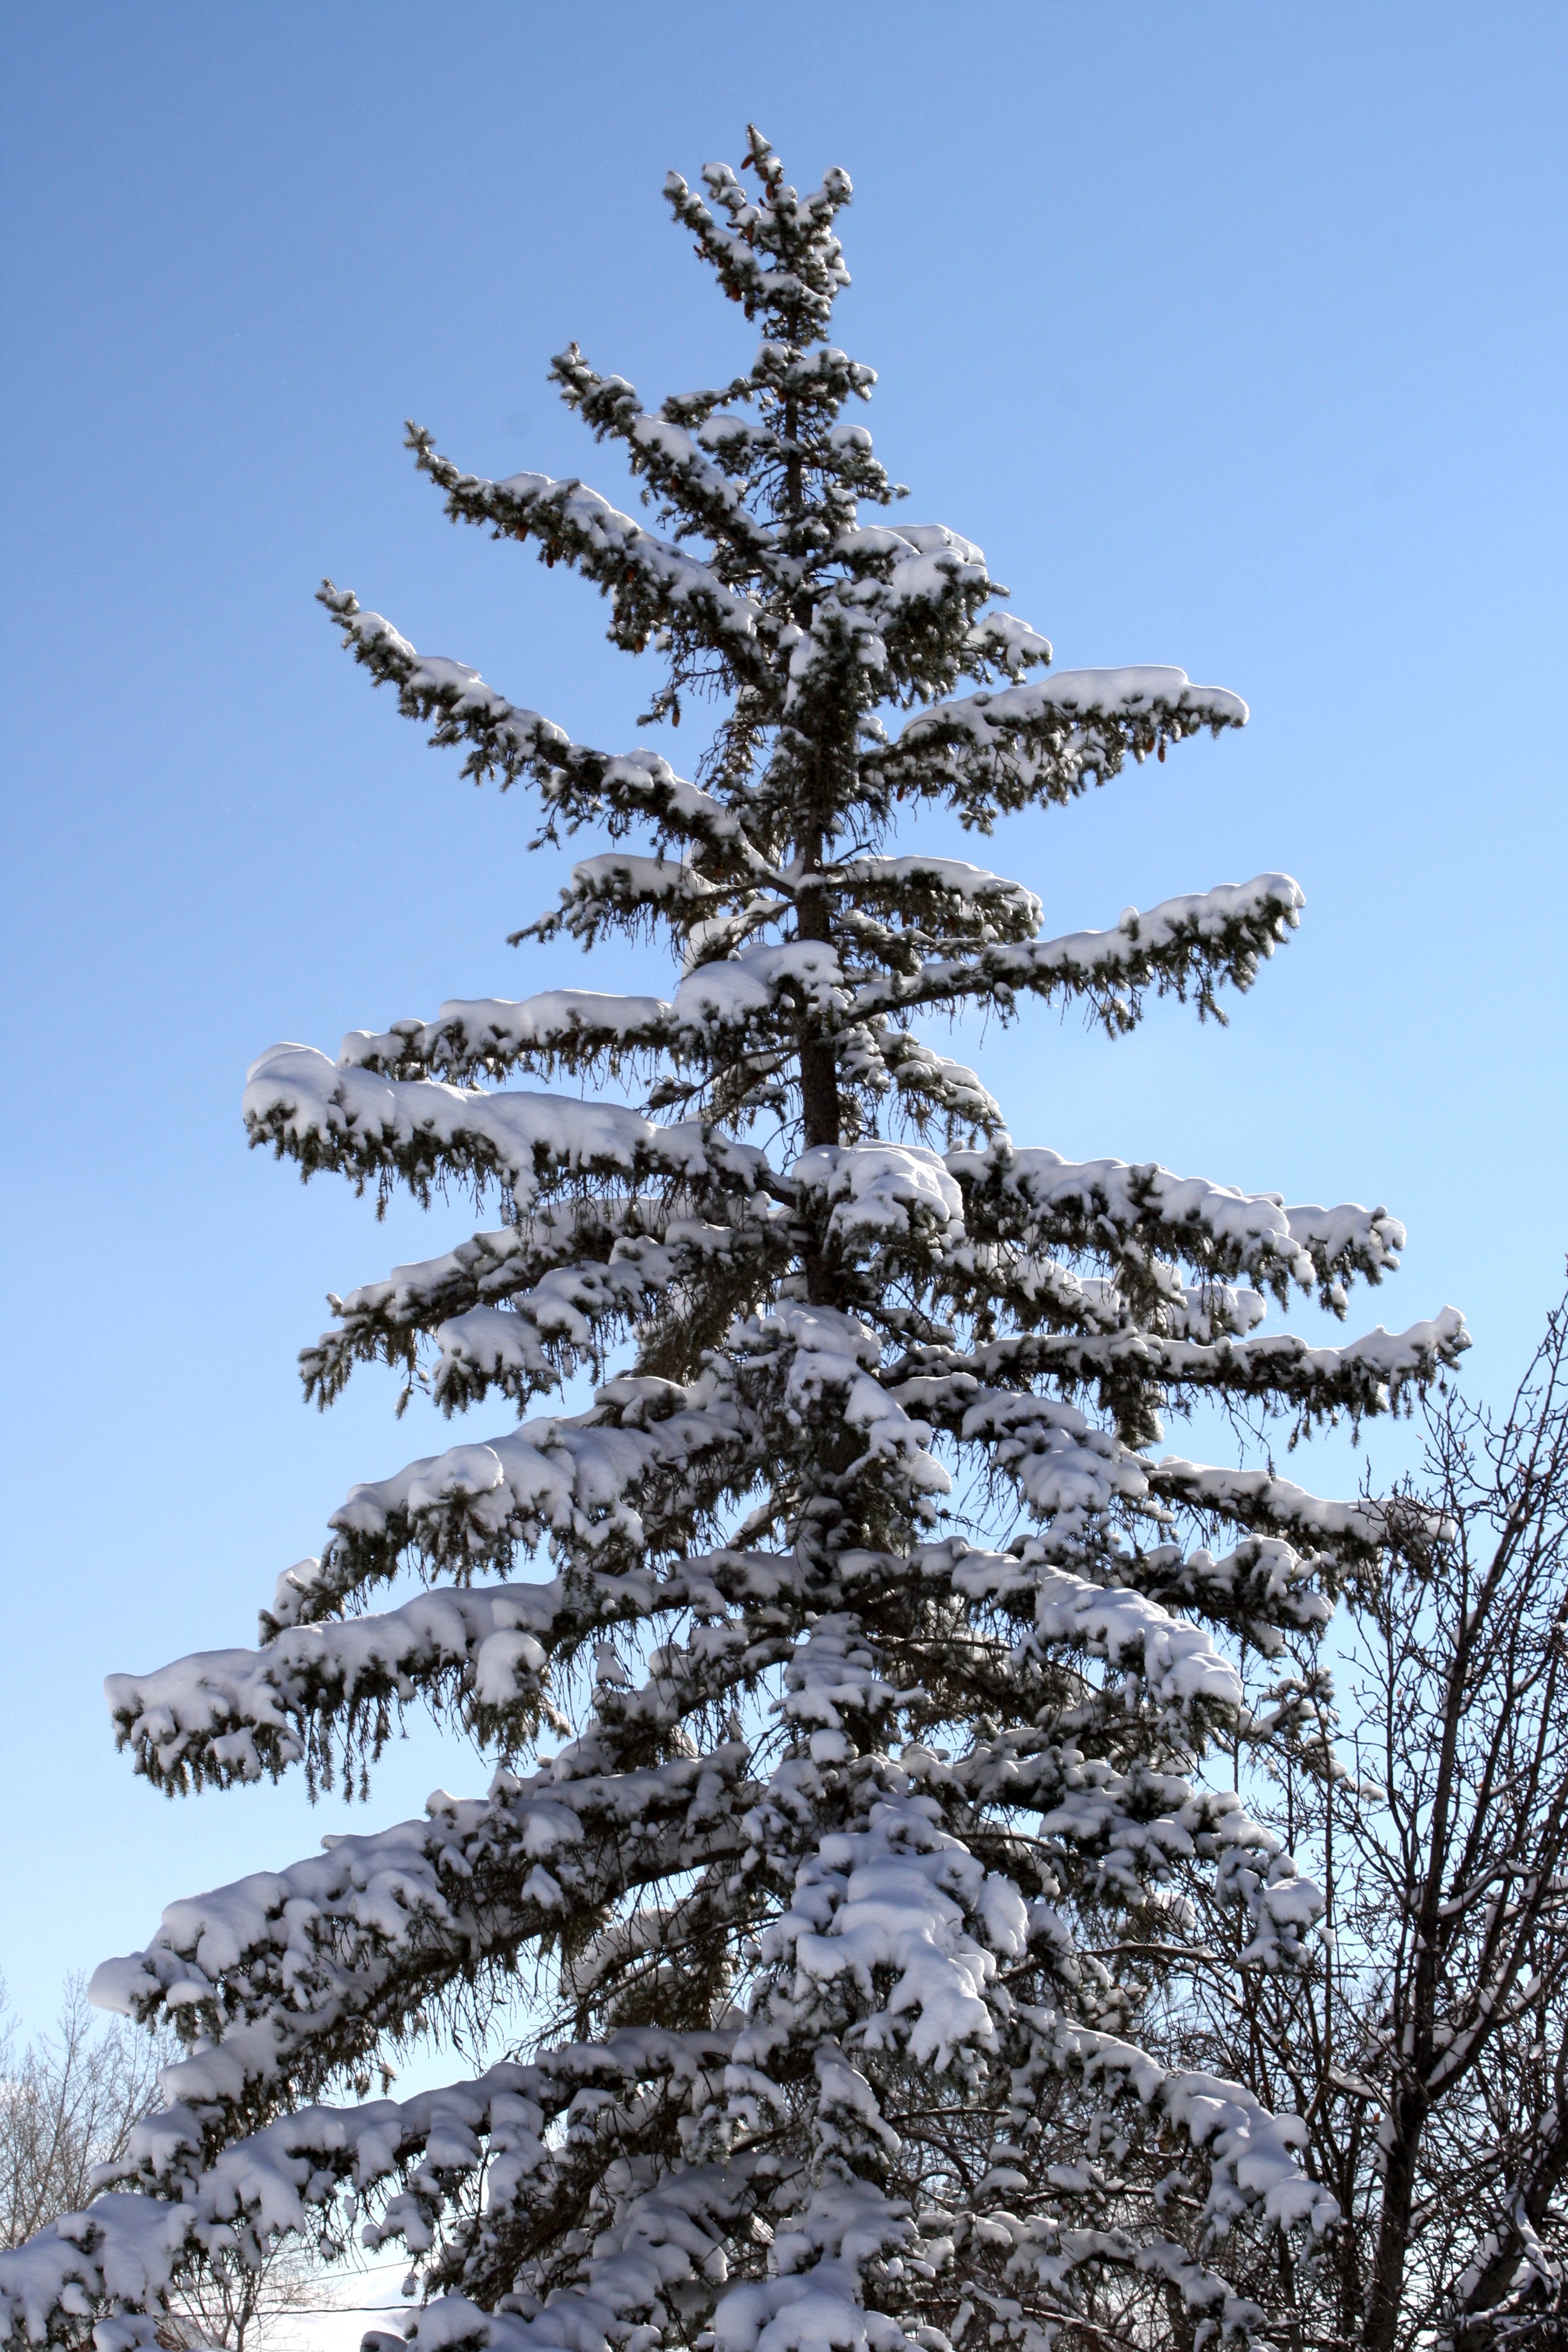 Snowy Pine Tree Painting